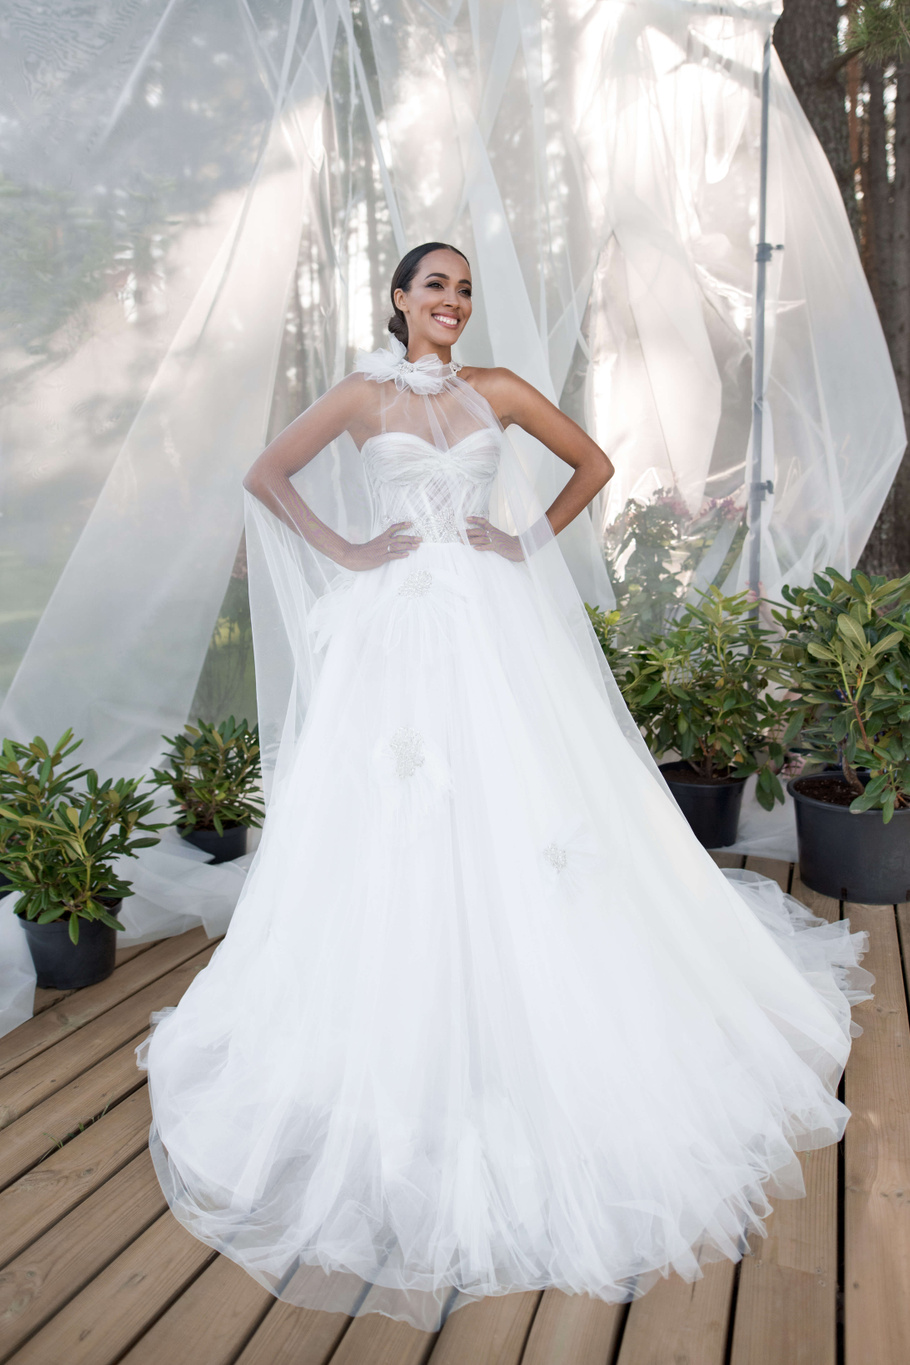 Купить свадебное платье «Рамили» Бламмо Биамо из коллекции Нимфа 2020 года в Екатеринбурге